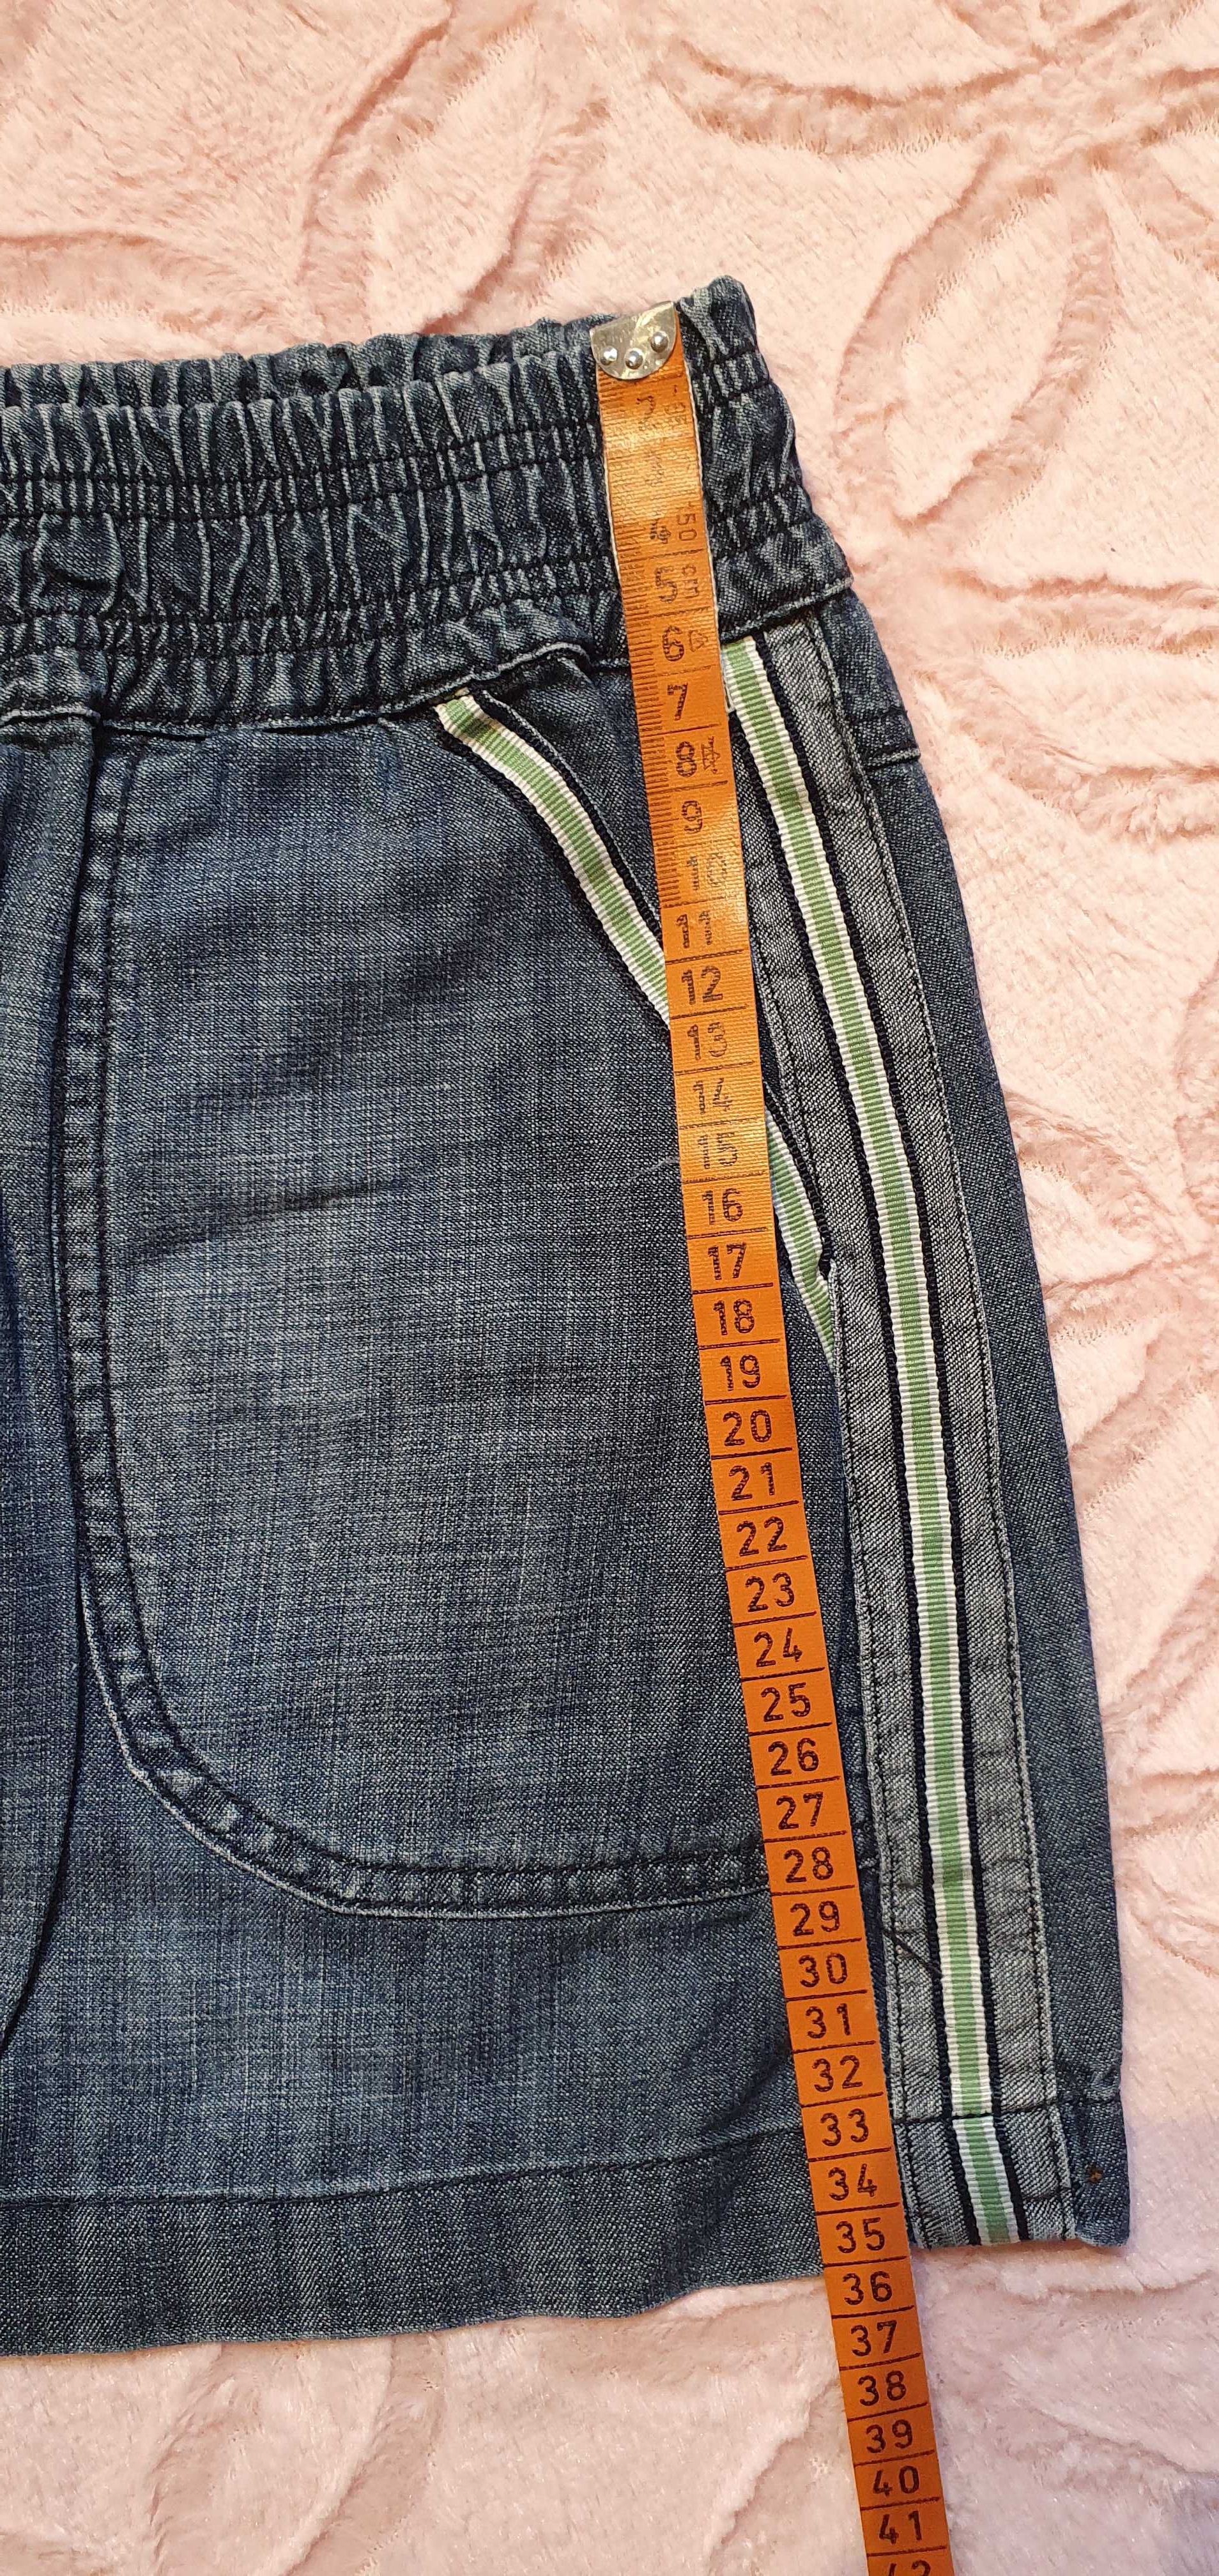 Jeansowa mini spódniczka firmy New Look rozmiar 38 M